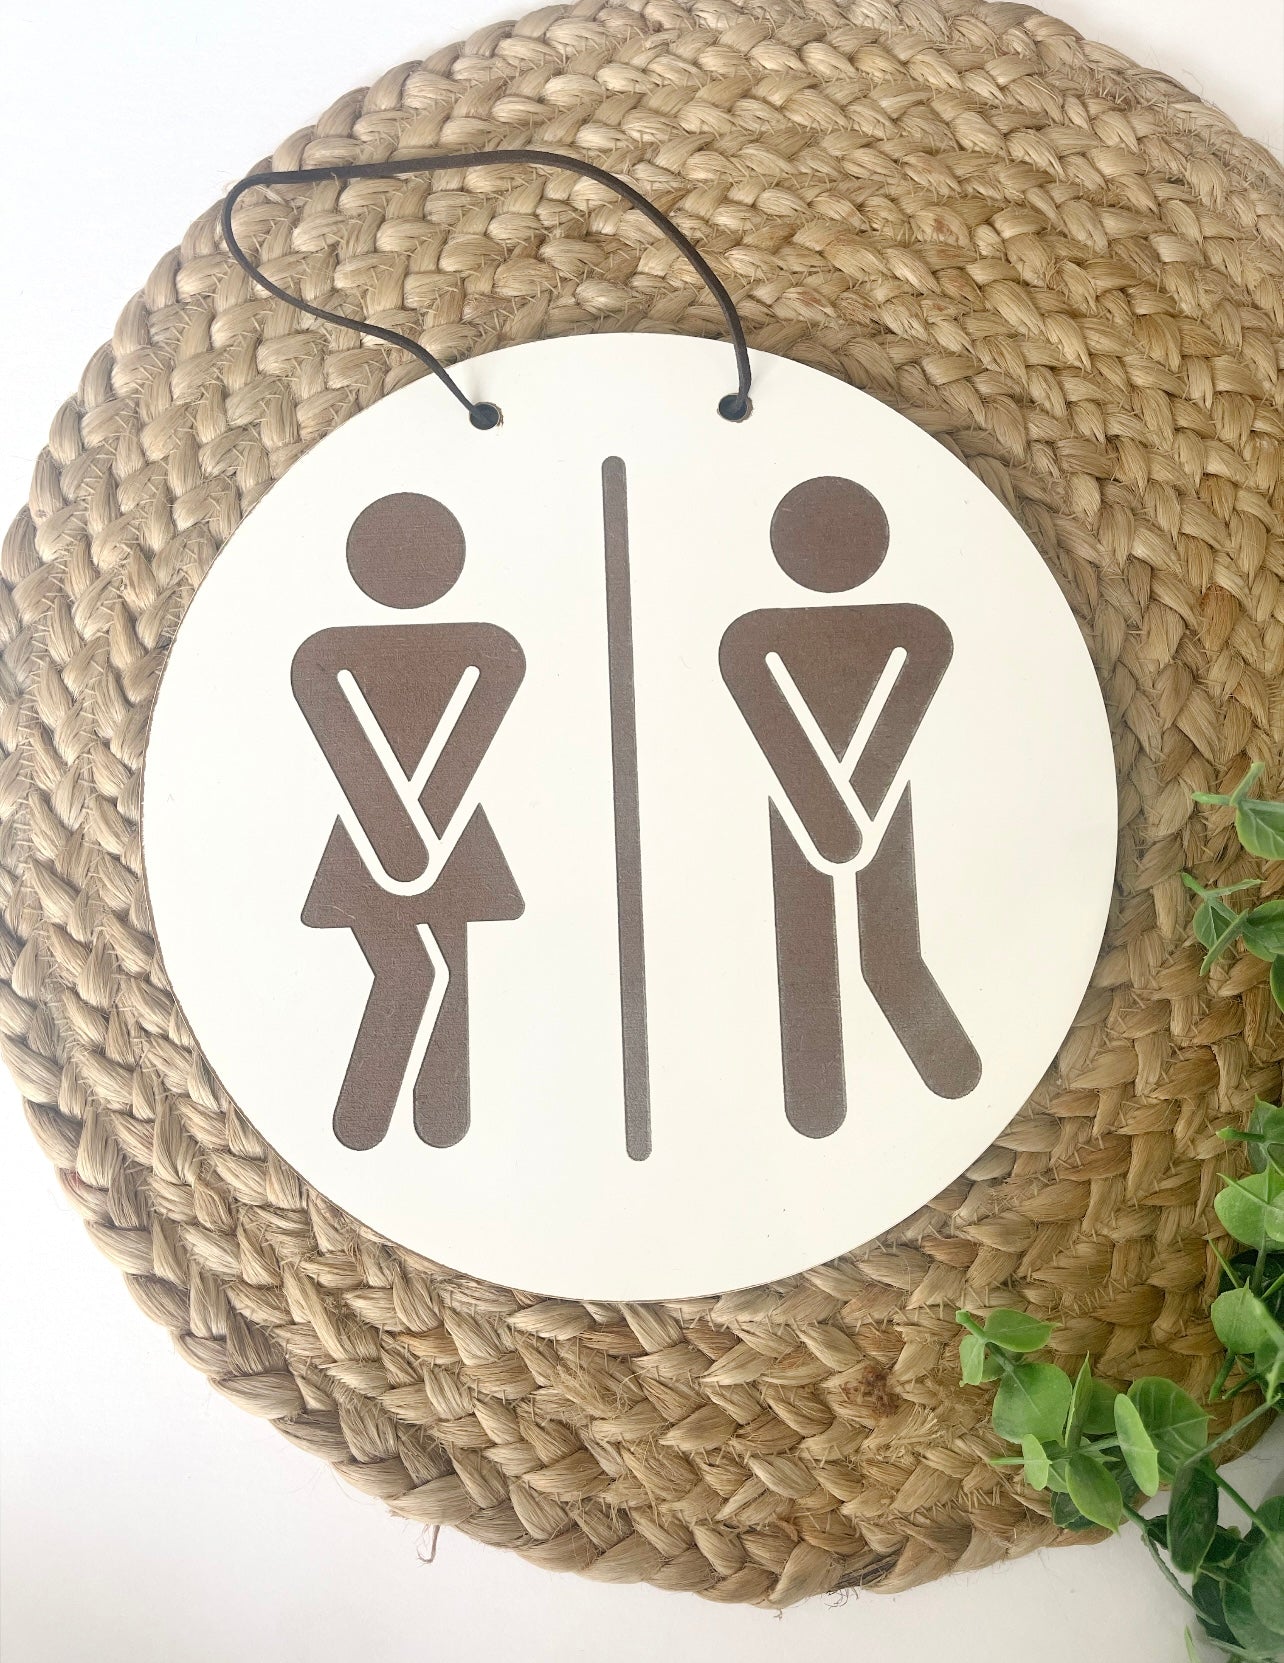 Funny restroom figure sign